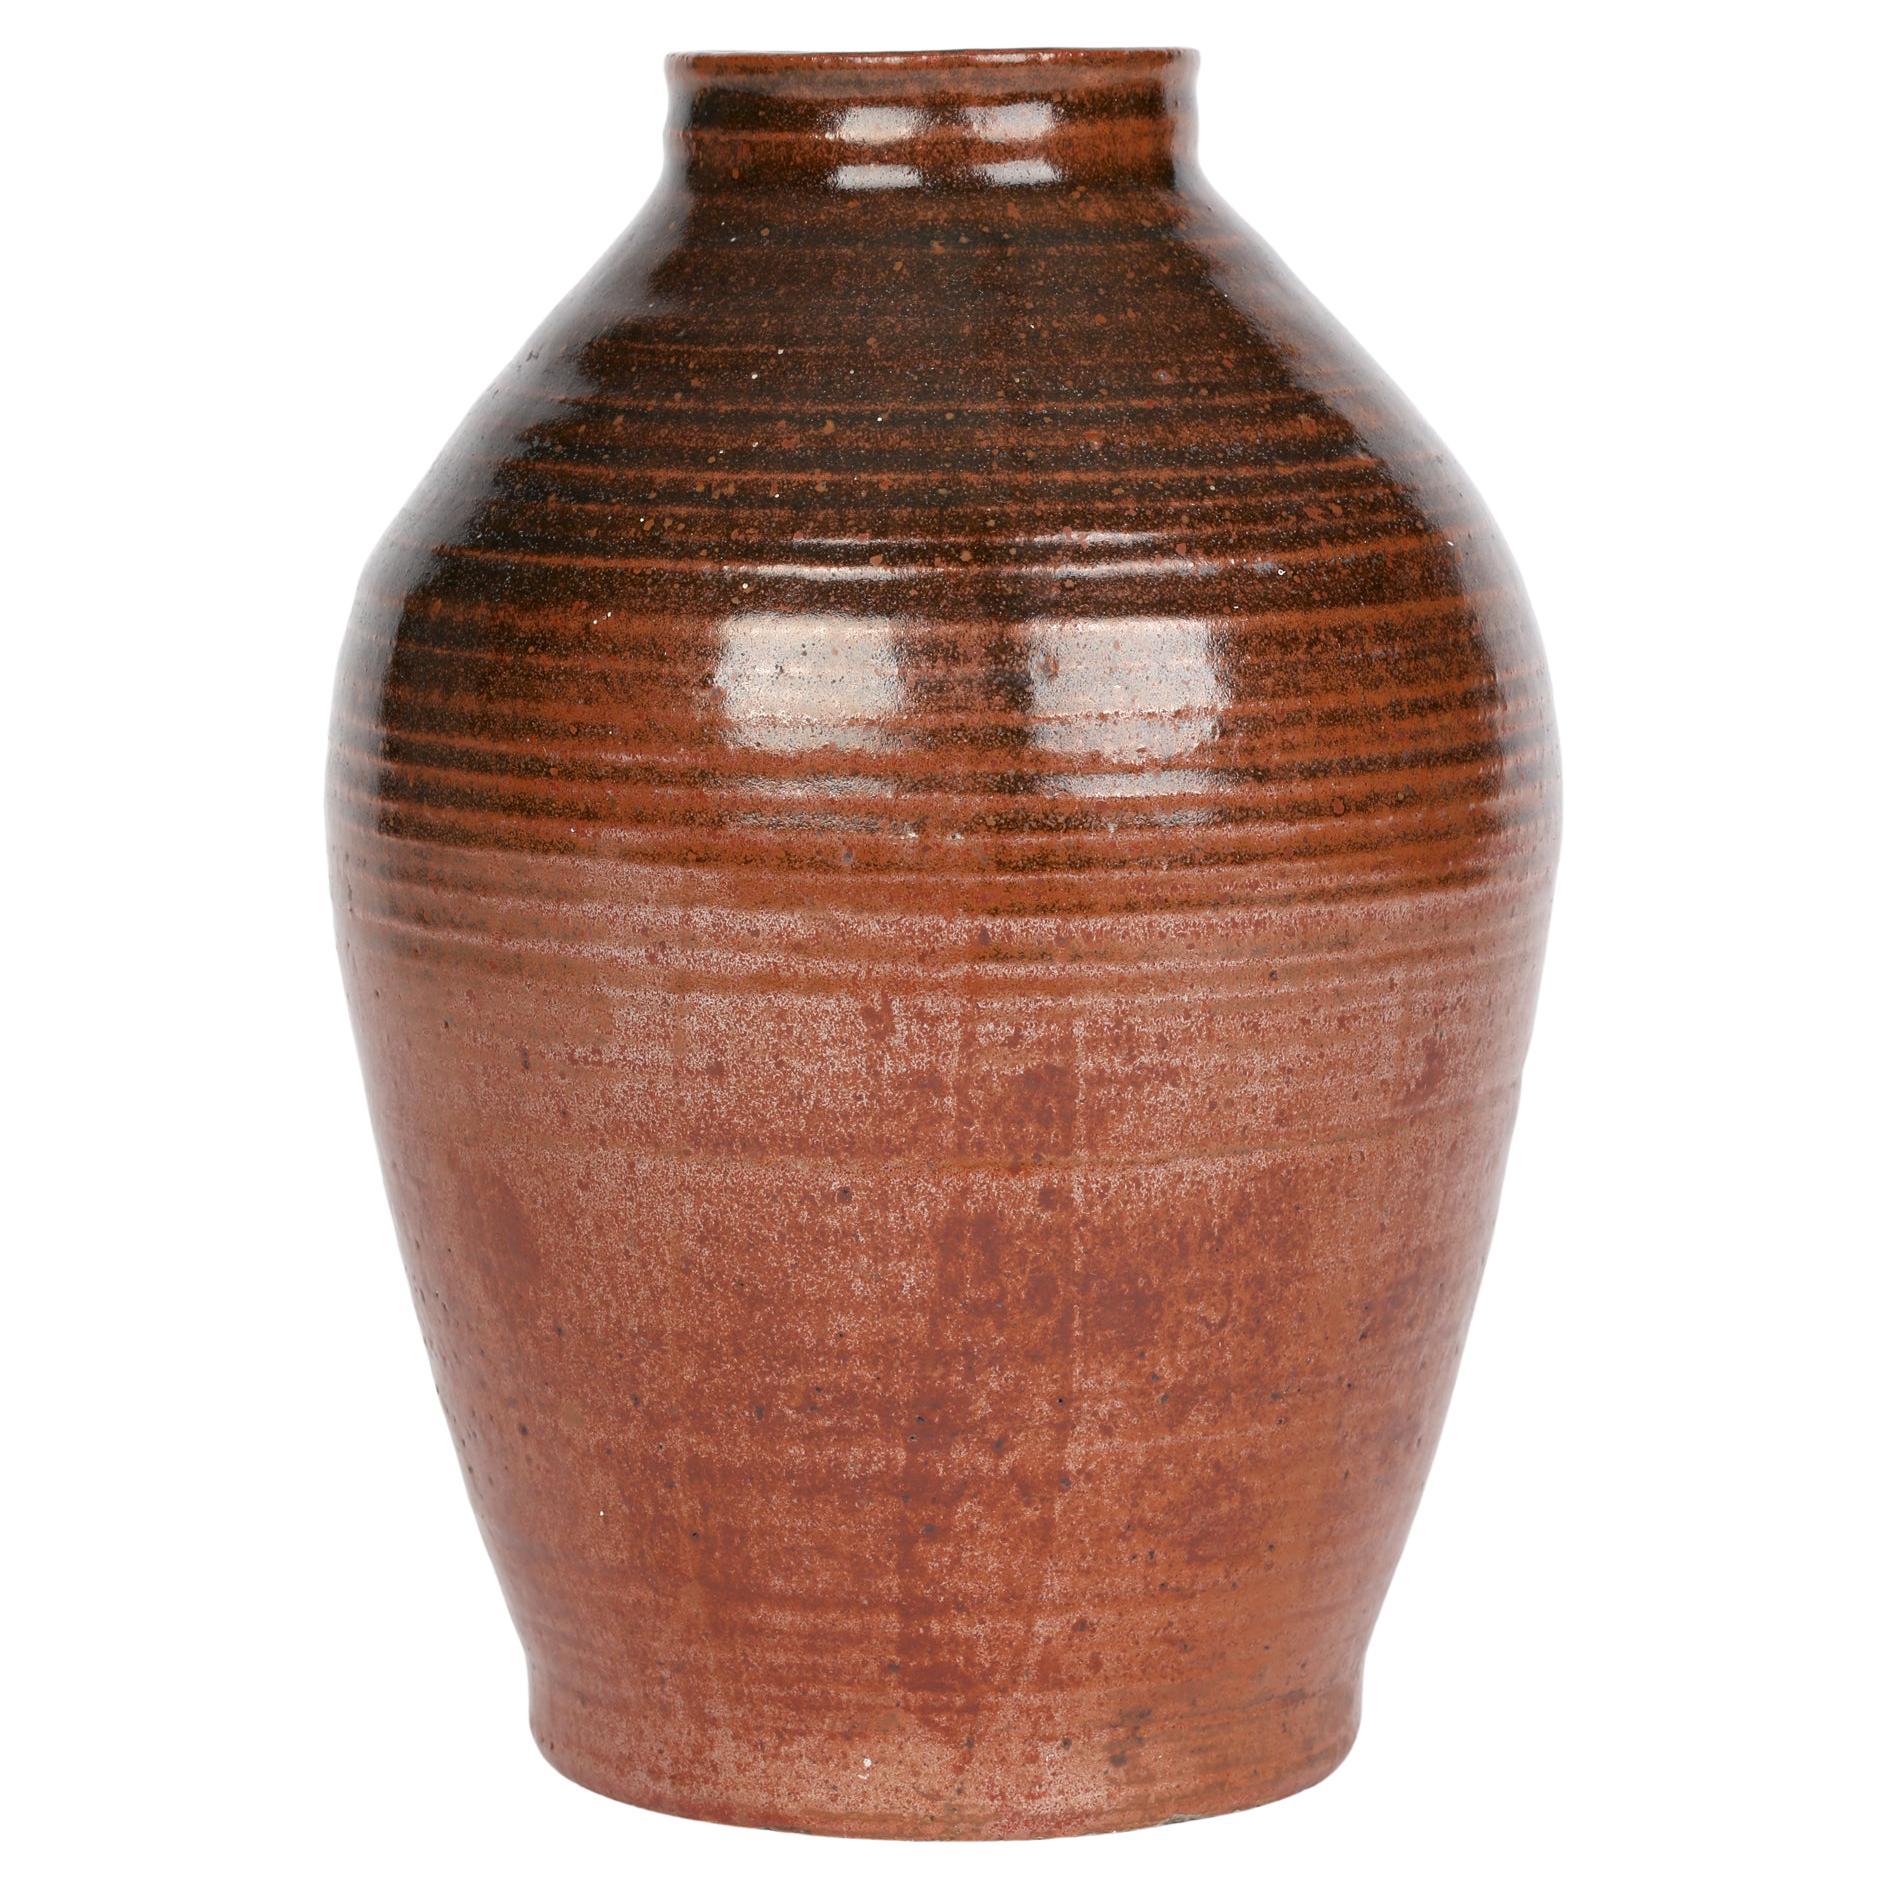 John Cole Rye Pottery Brown Glazed Studio Pottery Vase